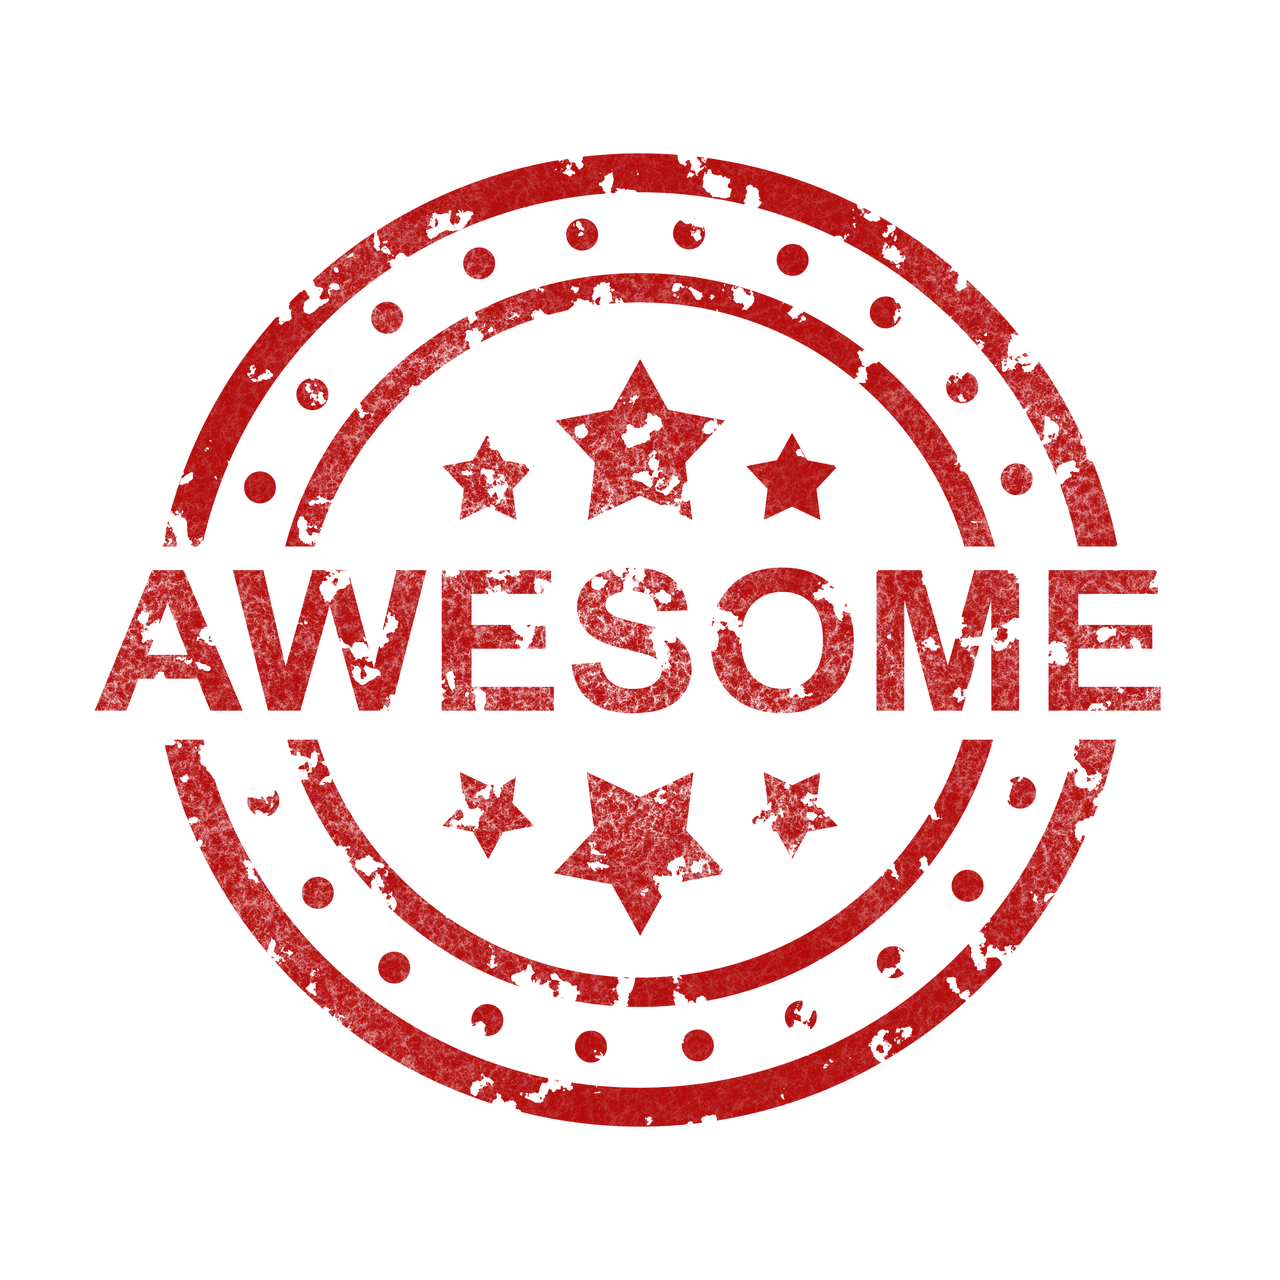 Awesome Stamp Brilliant Praise  - TheDigitalArtist / Pixabay